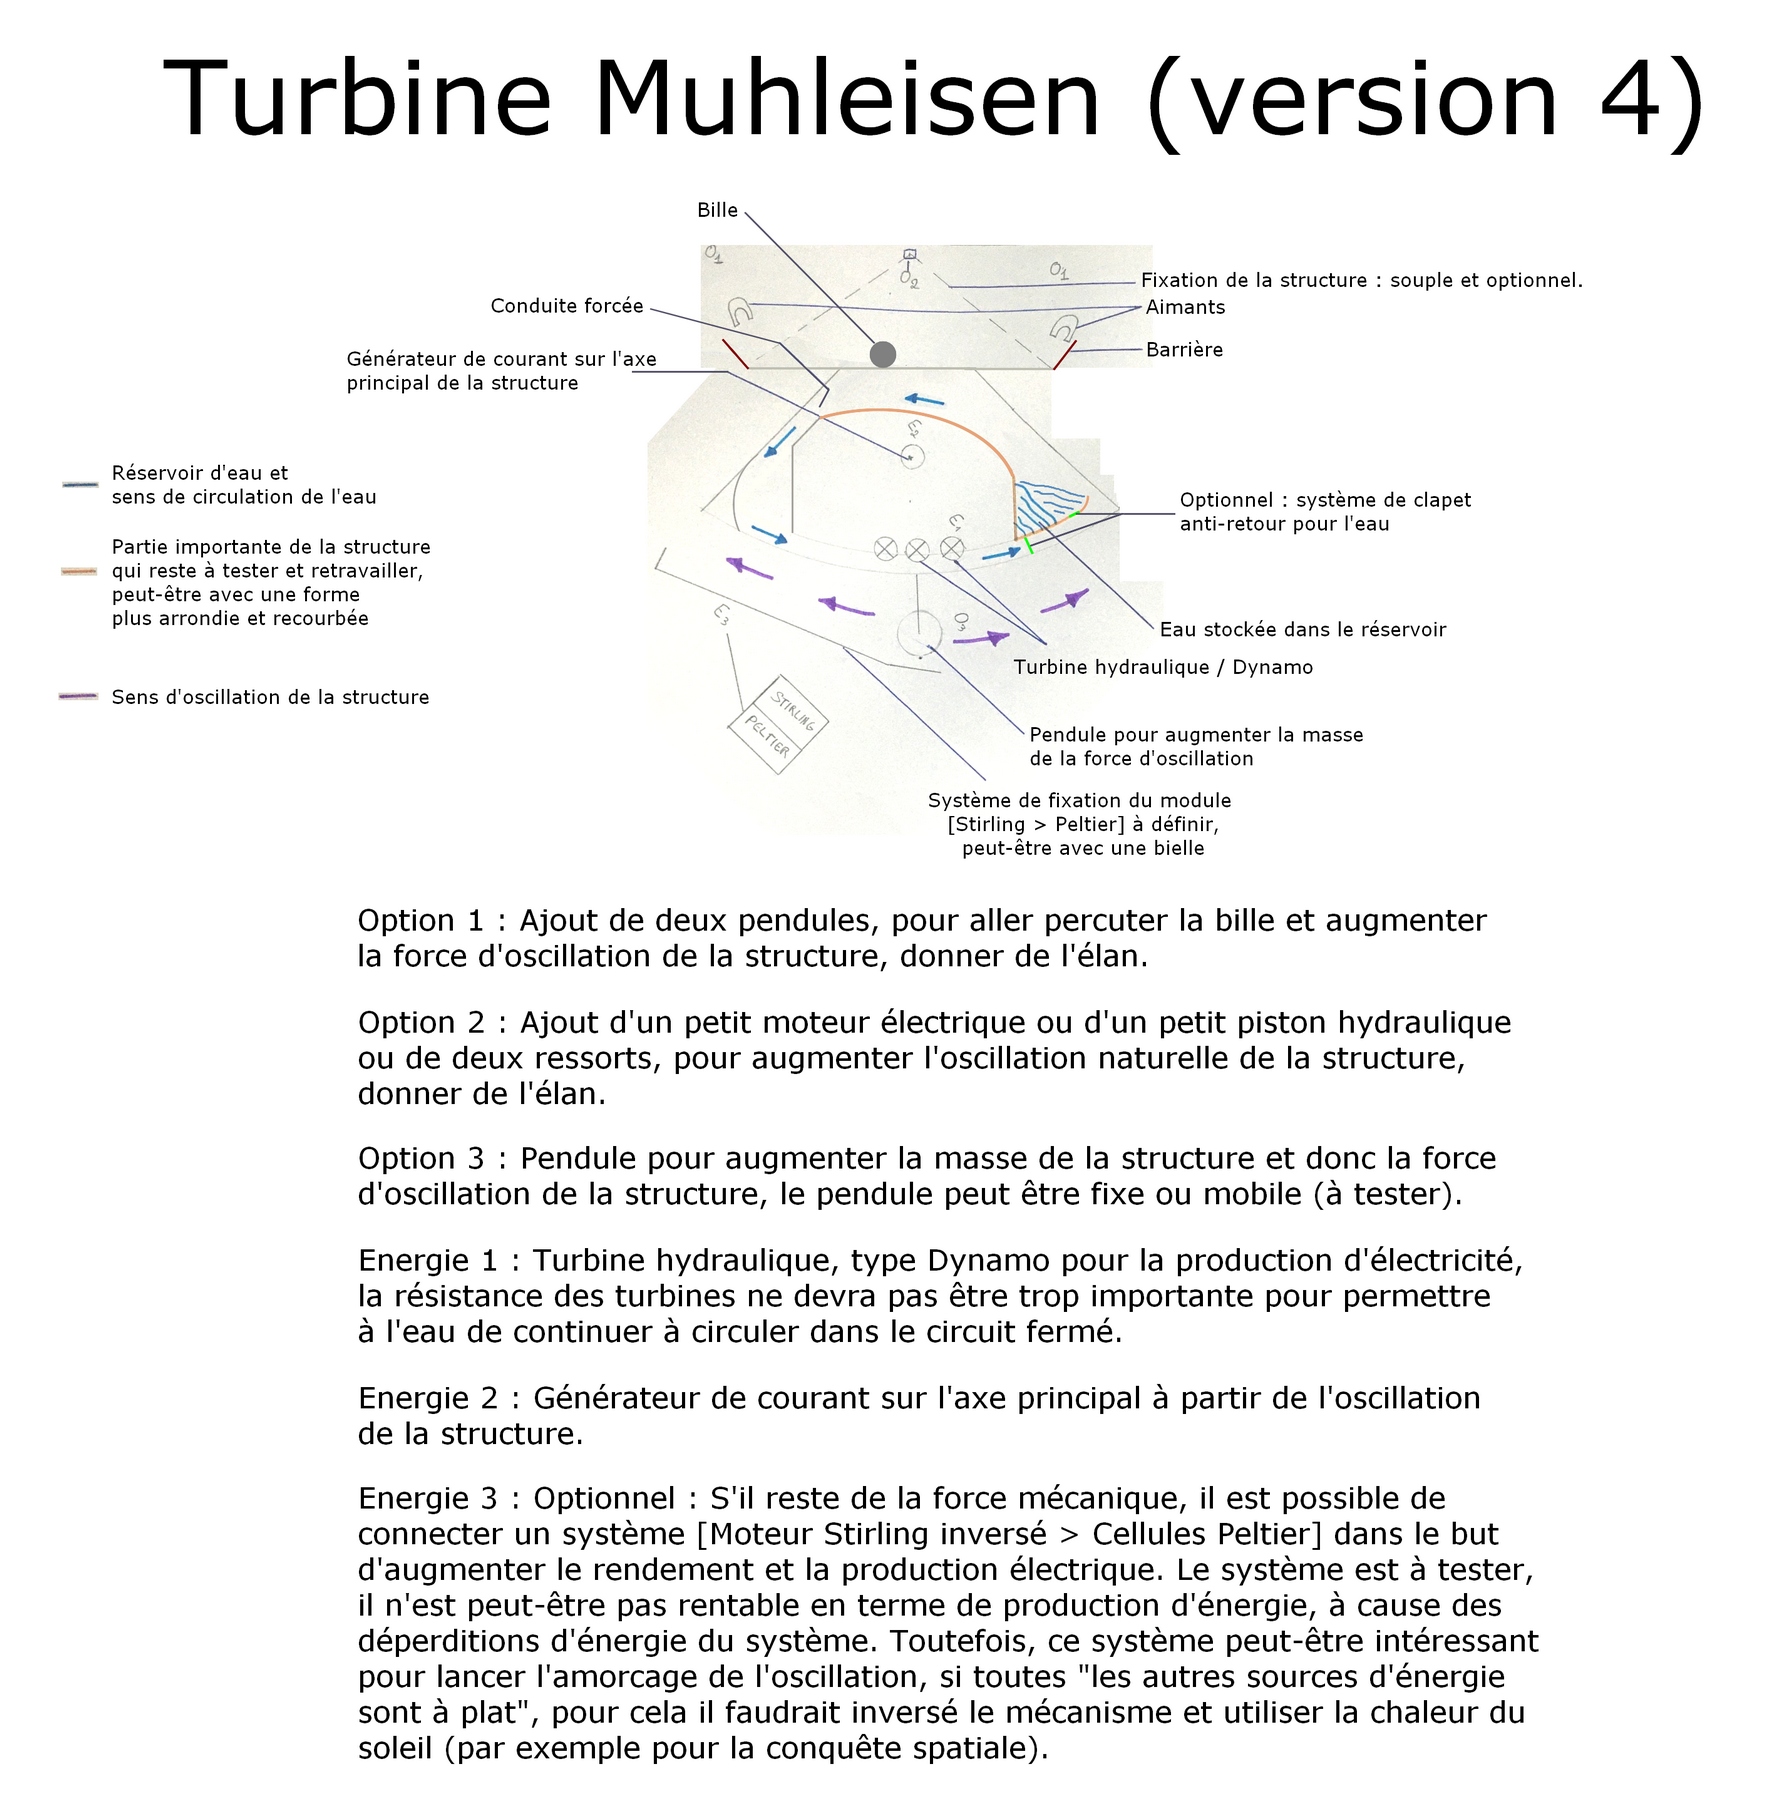 La Turbine Muhleisen quatrième version